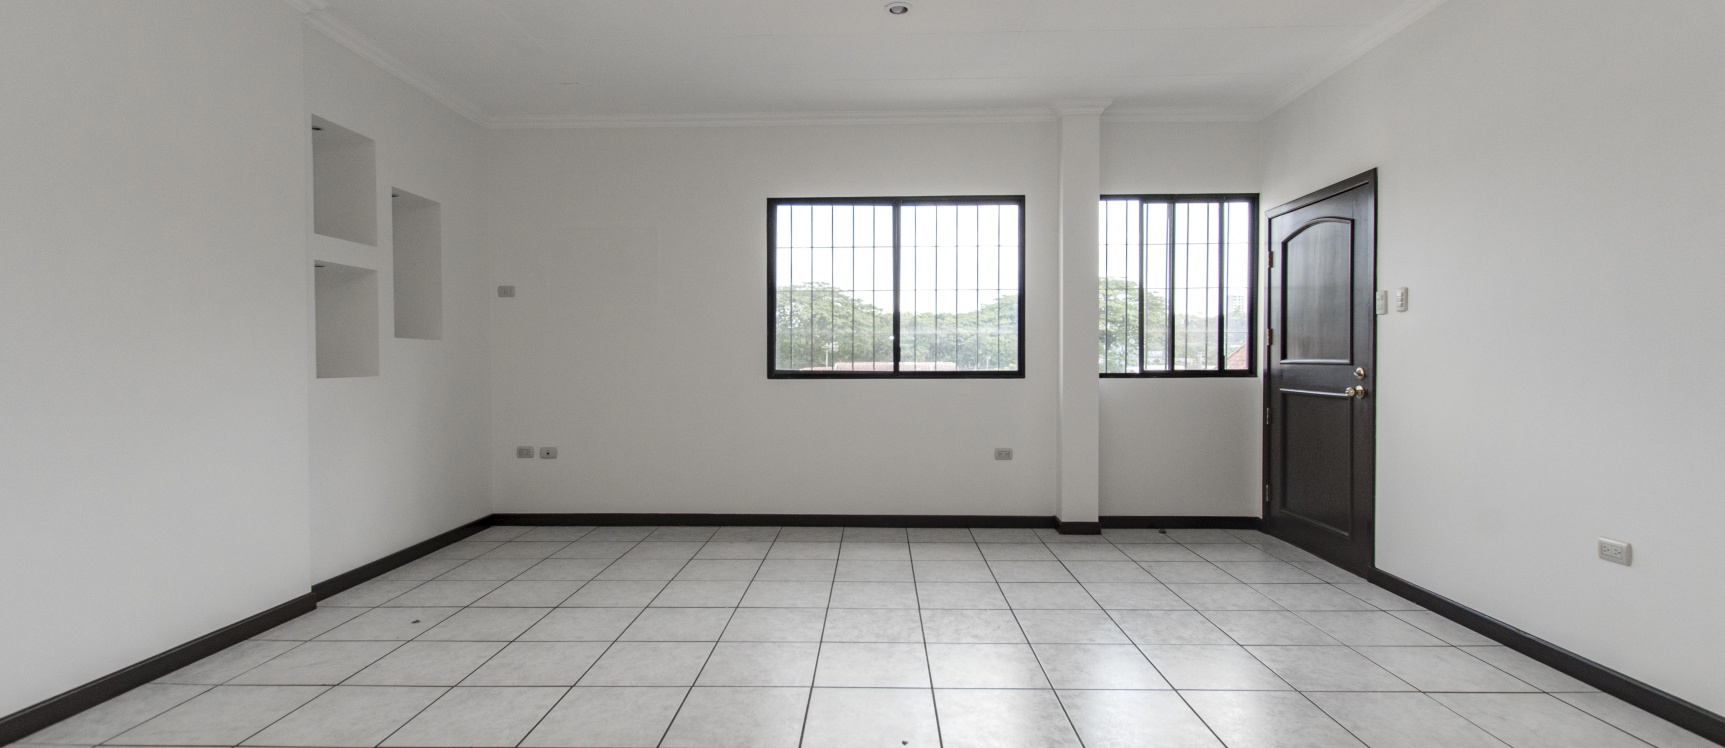 GeoBienes - Departamento en alquiler ubicado en la Urbanización Los Parques, Ceibos - Plusvalia Guayaquil Casas de venta y alquiler Inmobiliaria Ecuador